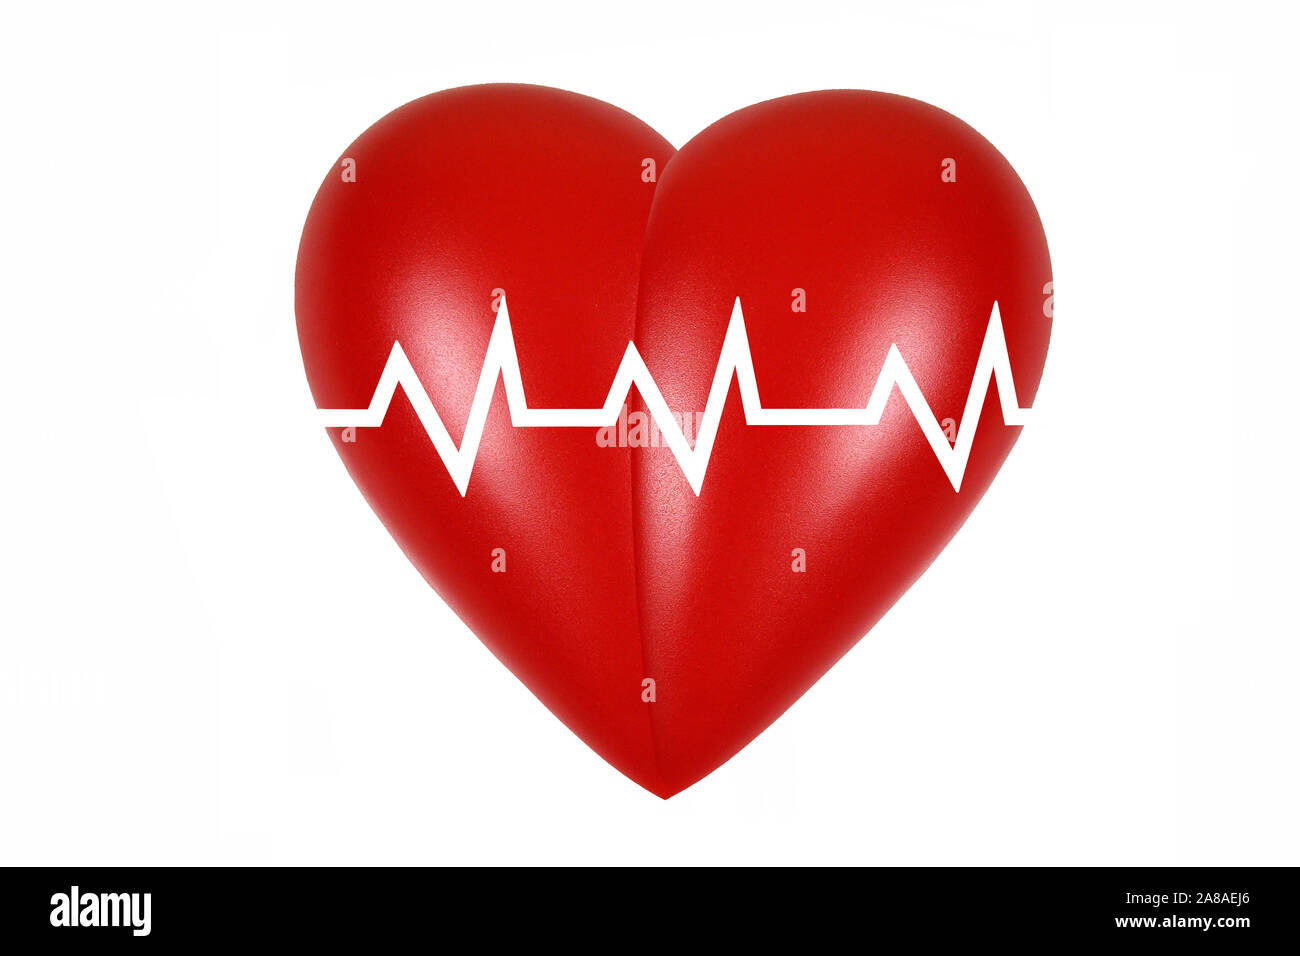 Rotes Herz, Organ, Gesundheit, Körperteil, Herzfrequenz, Stock Photo